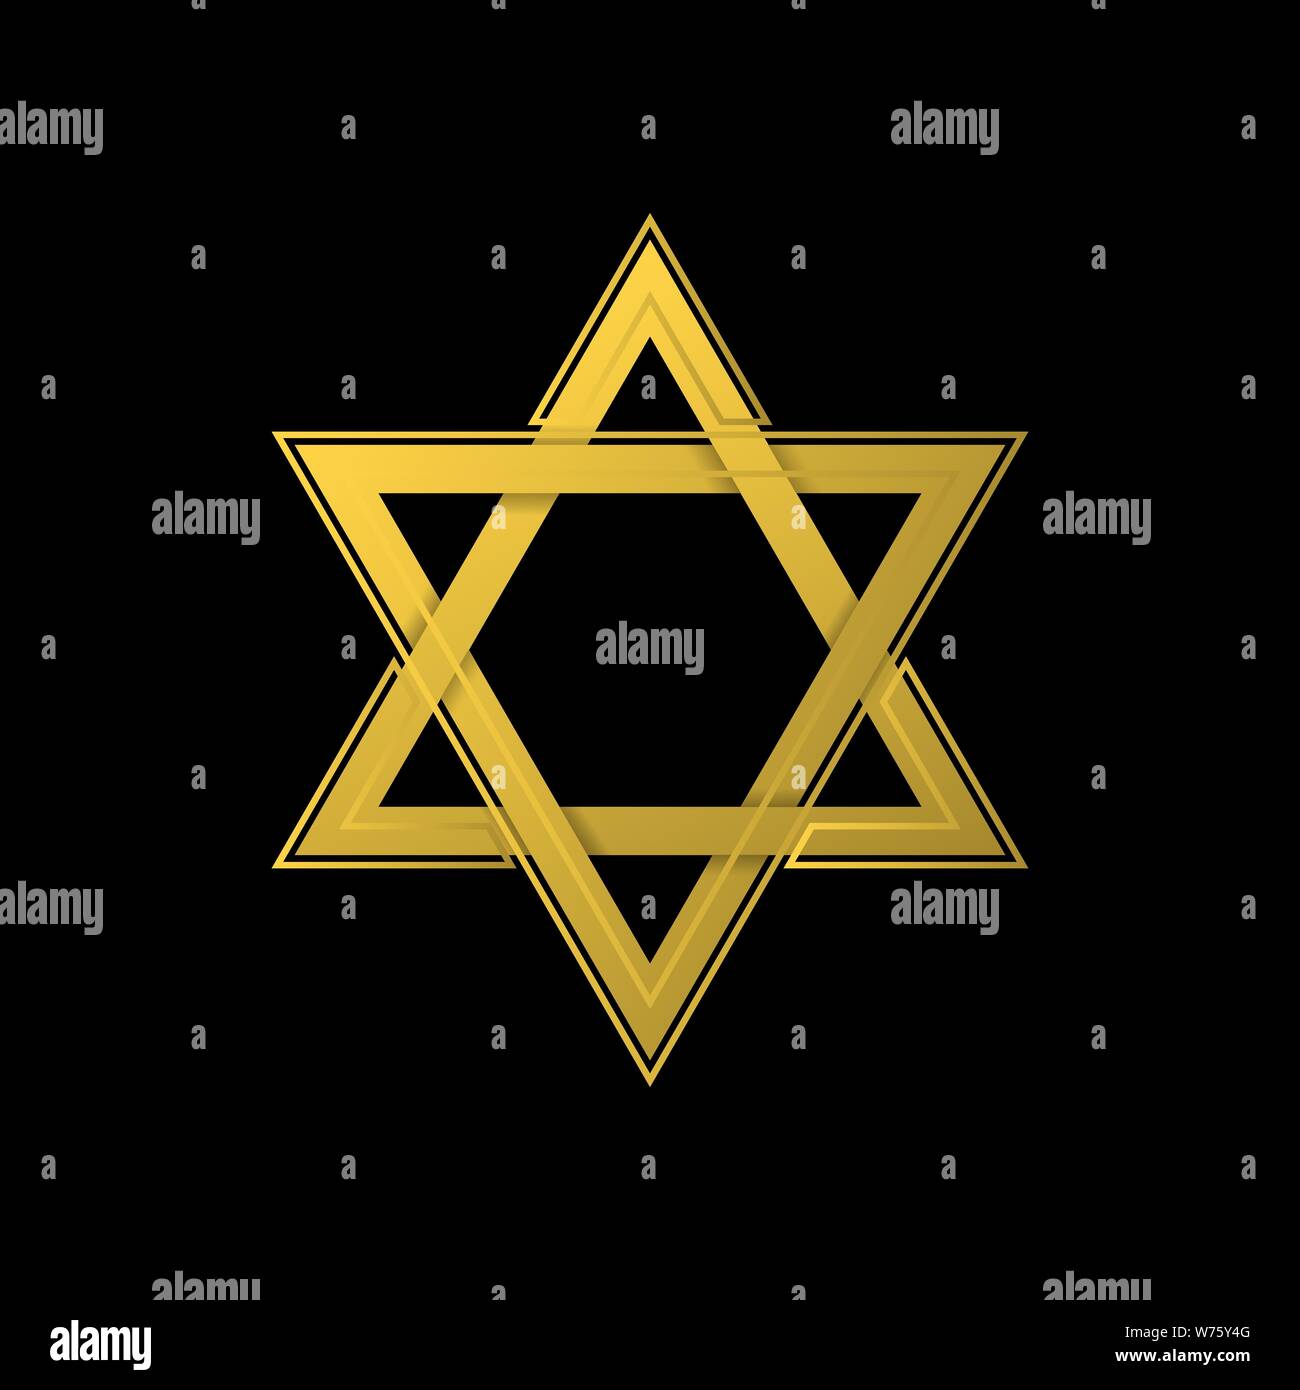 Goldene Davidstern Symbol. Allgemein anerkannten Symbol des modernen jüdischen Identität und Judentum, Israel Symbol Stock Vektor